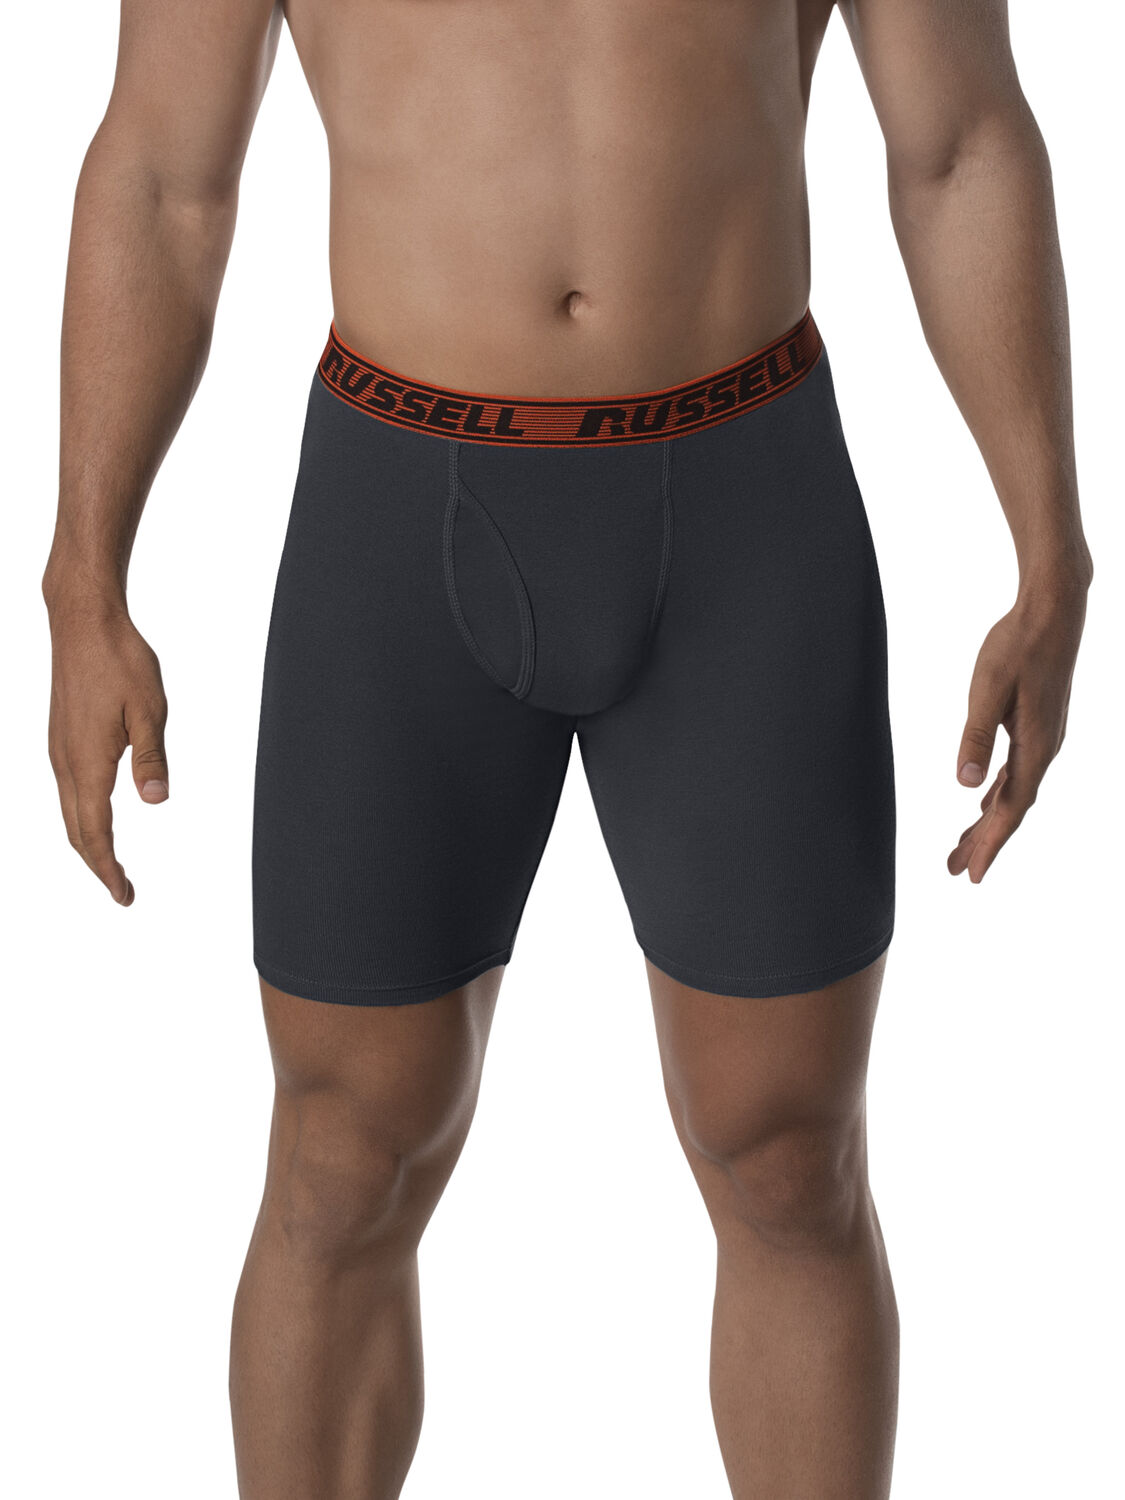 Russell Men's Comfort Performance Sport Briefs, 4 Pack